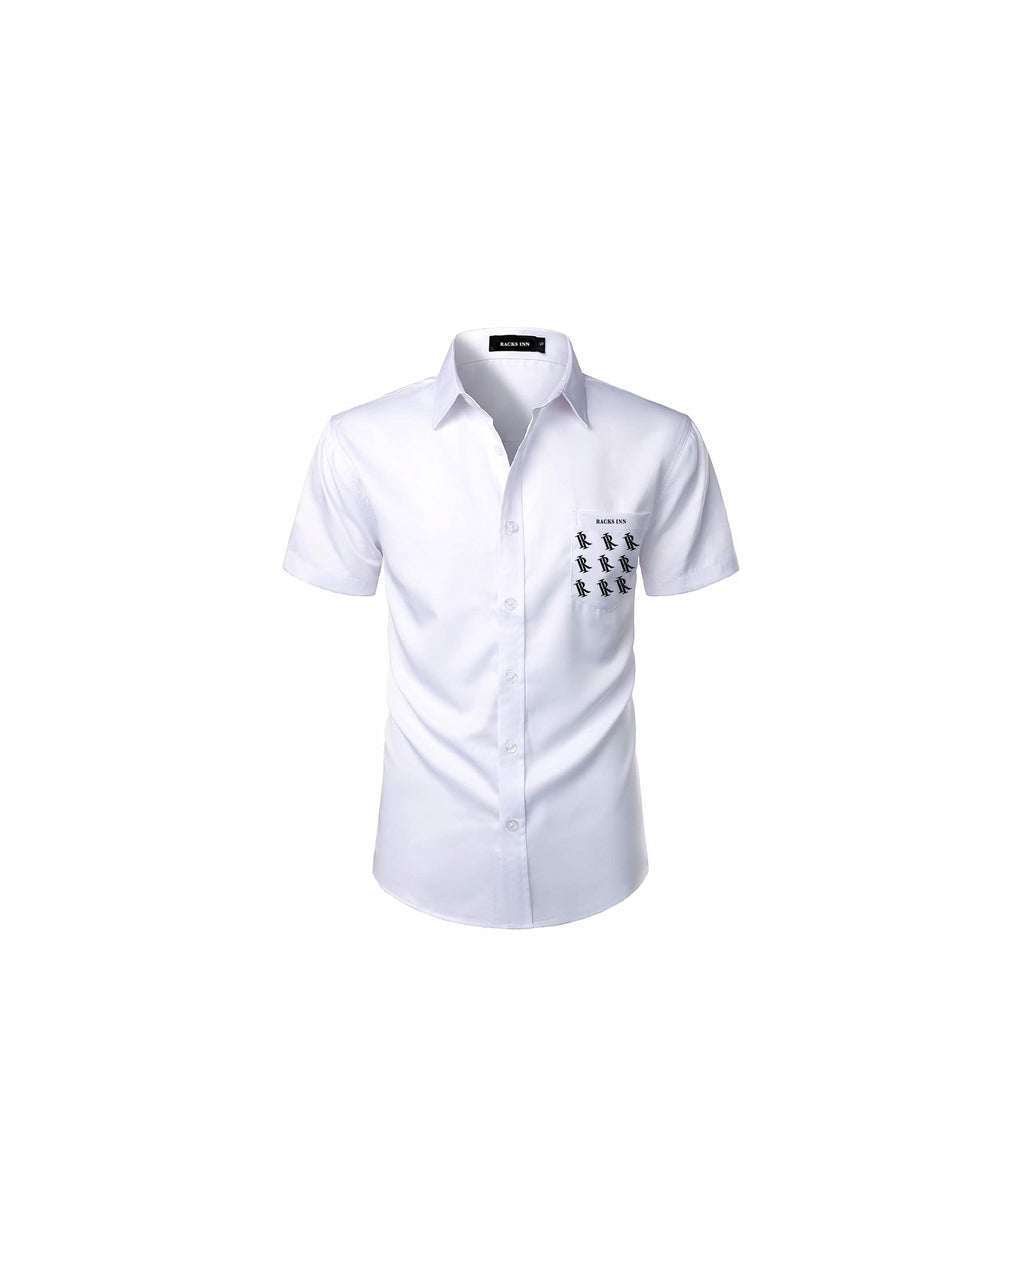 Monogram Graphic Casual Shirt - White